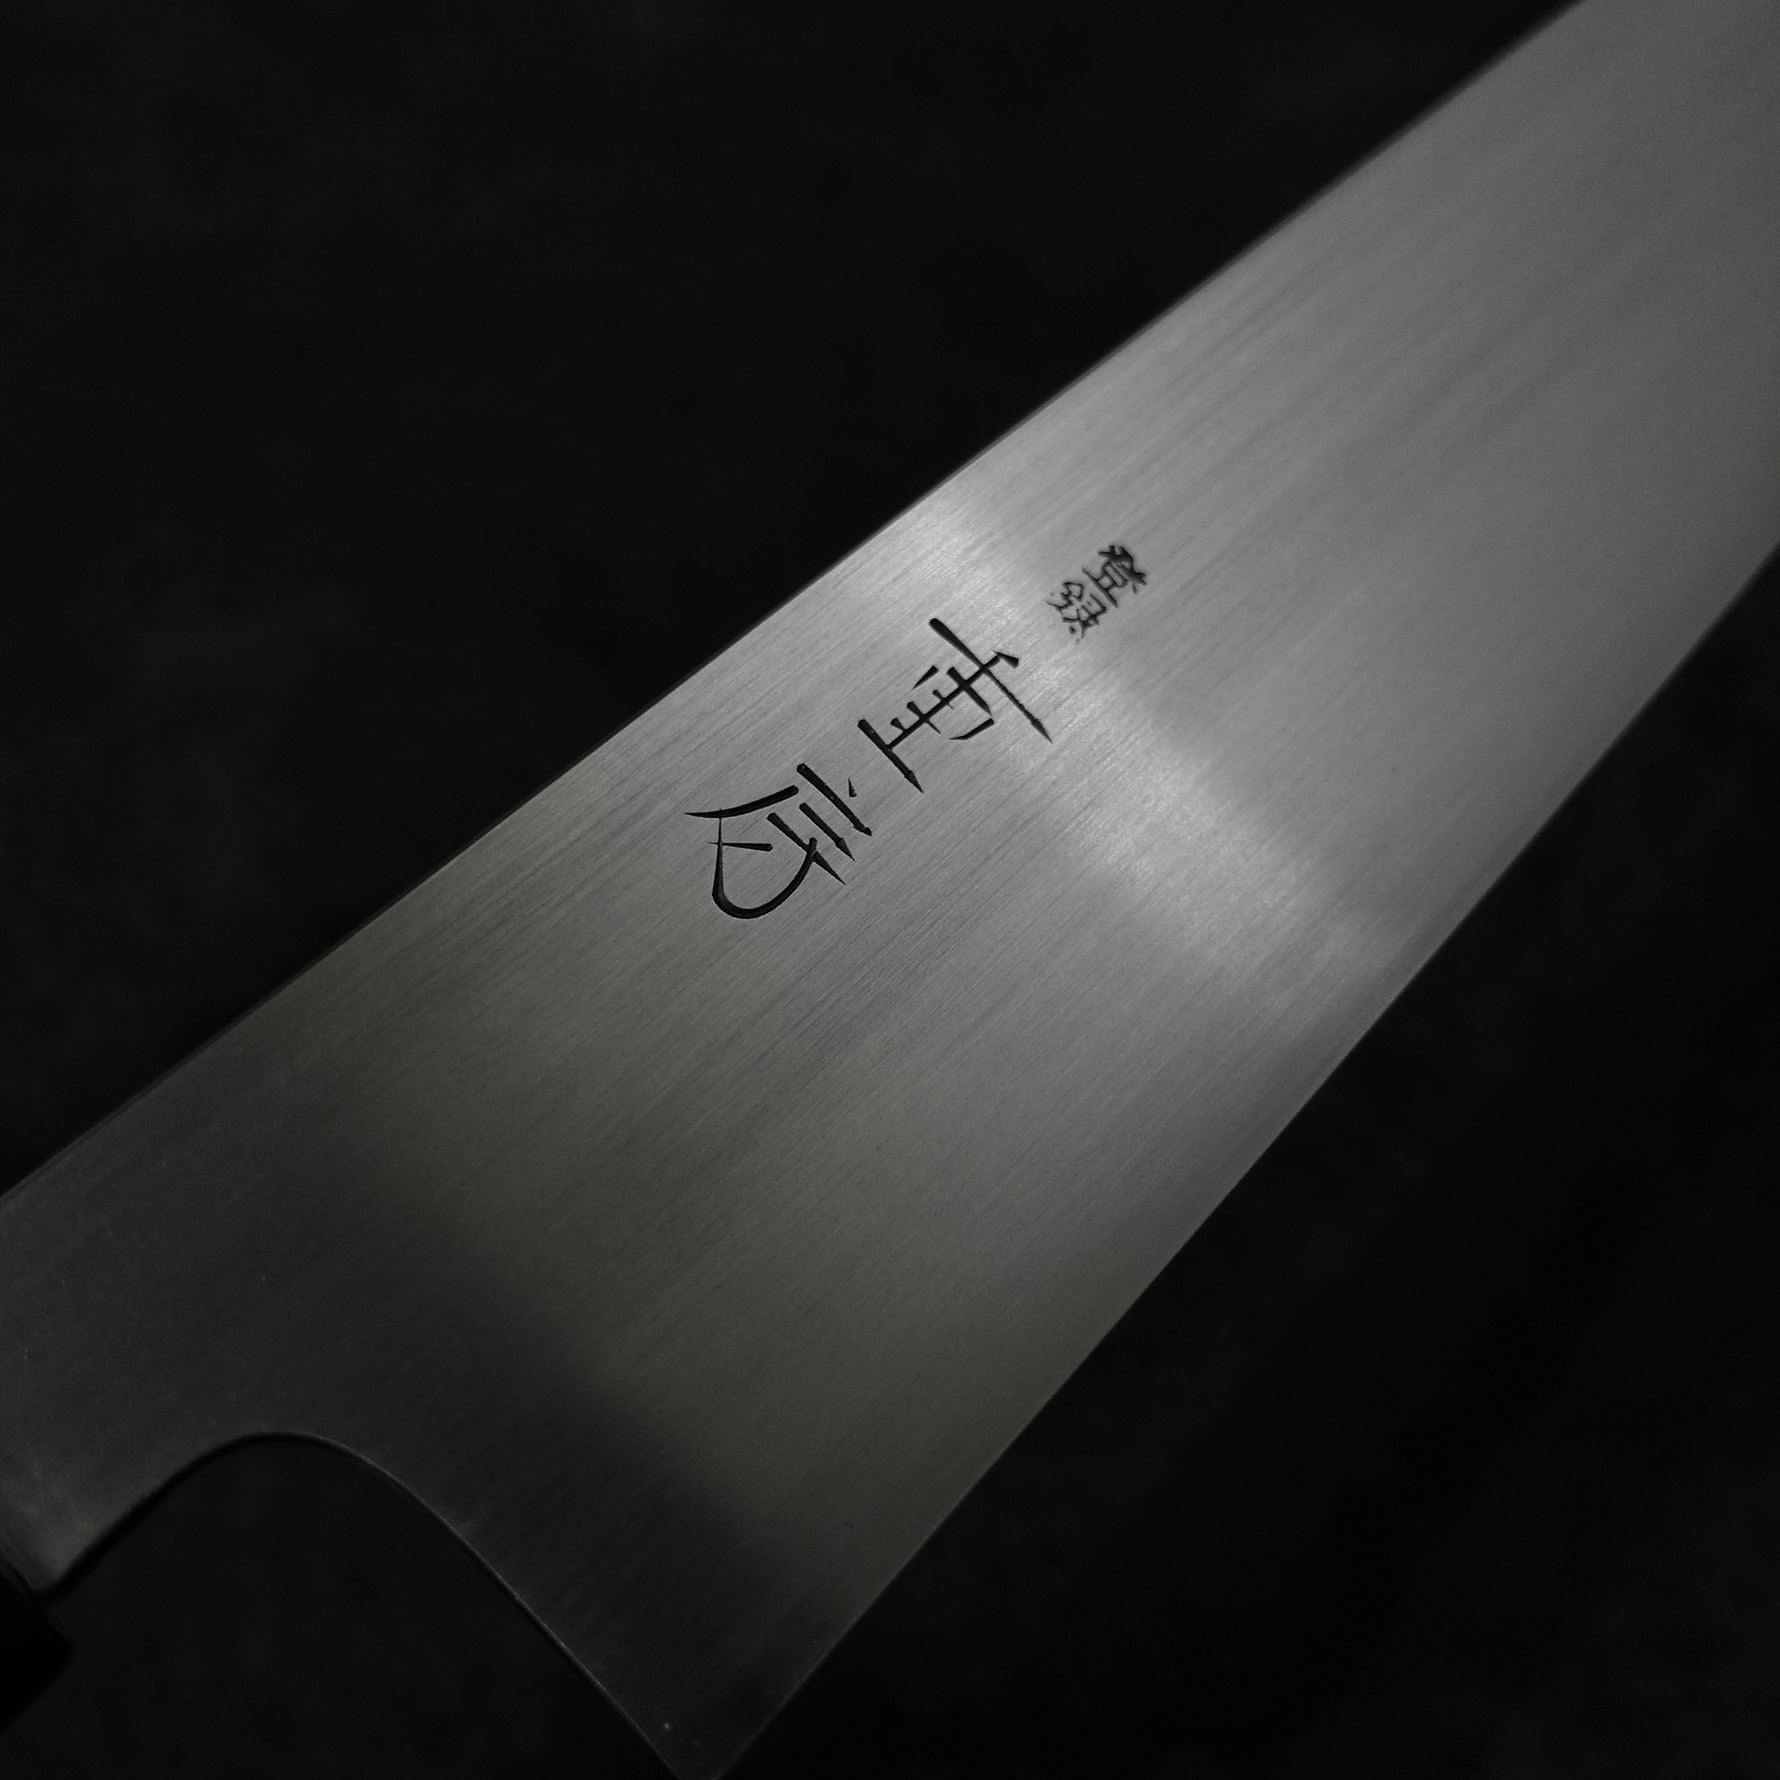 Shigefusa kasumi 240mm wa-gyuto - Zahocho Japanese Knives